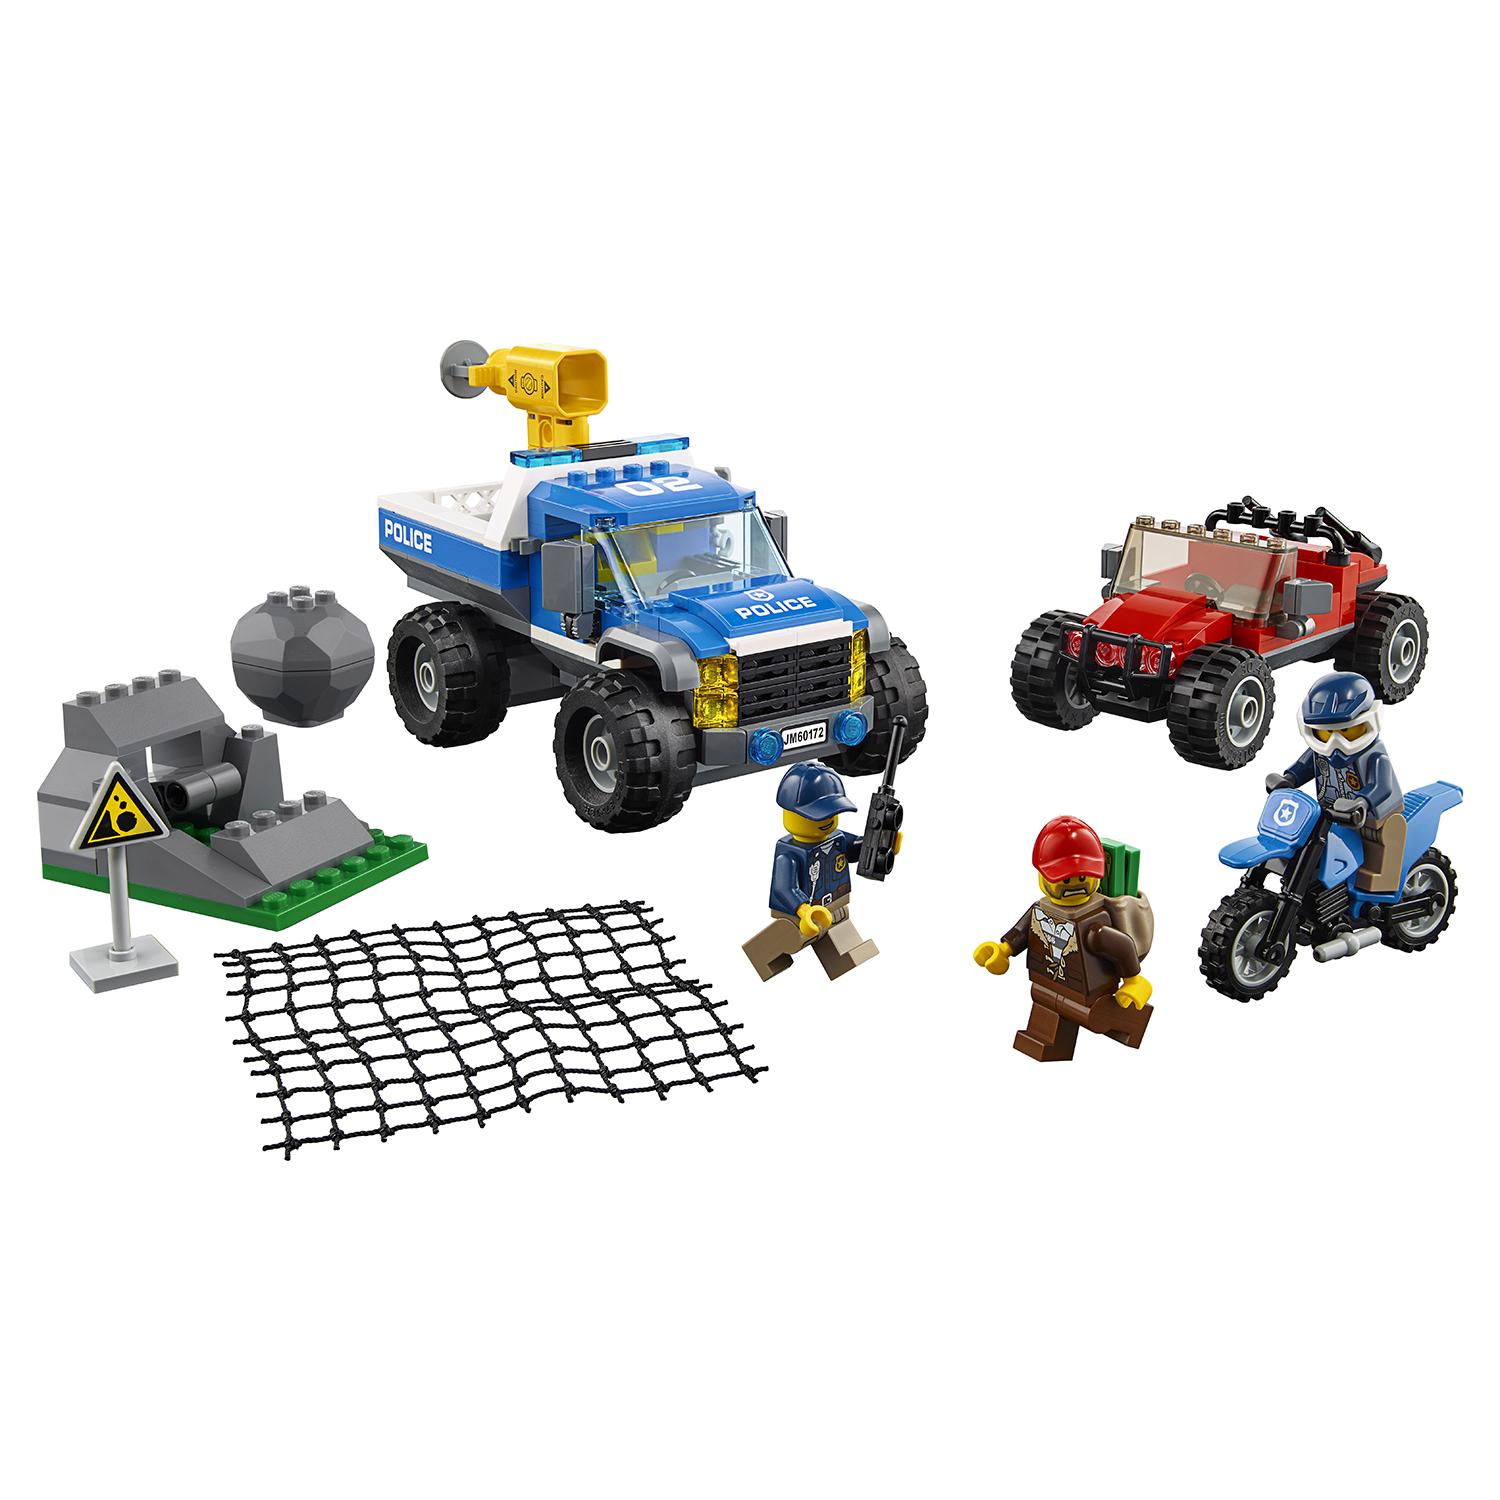 Lego City 60172 Погоня по грунтовой дороге